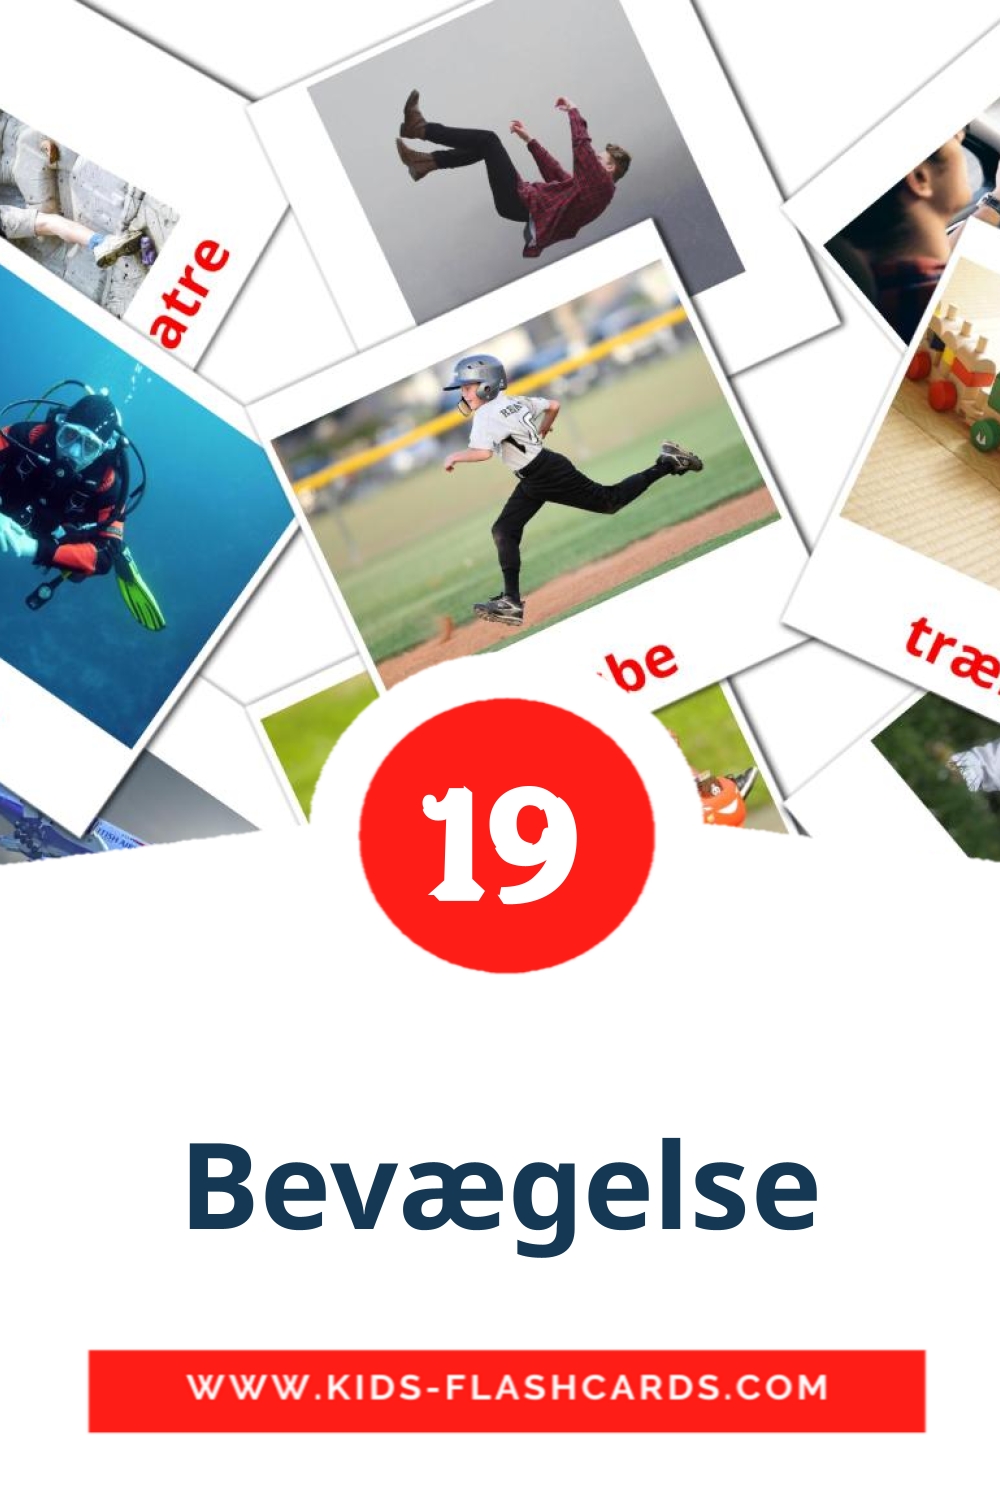 19 tarjetas didacticas de Bevægelse para el jardín de infancia en dansk